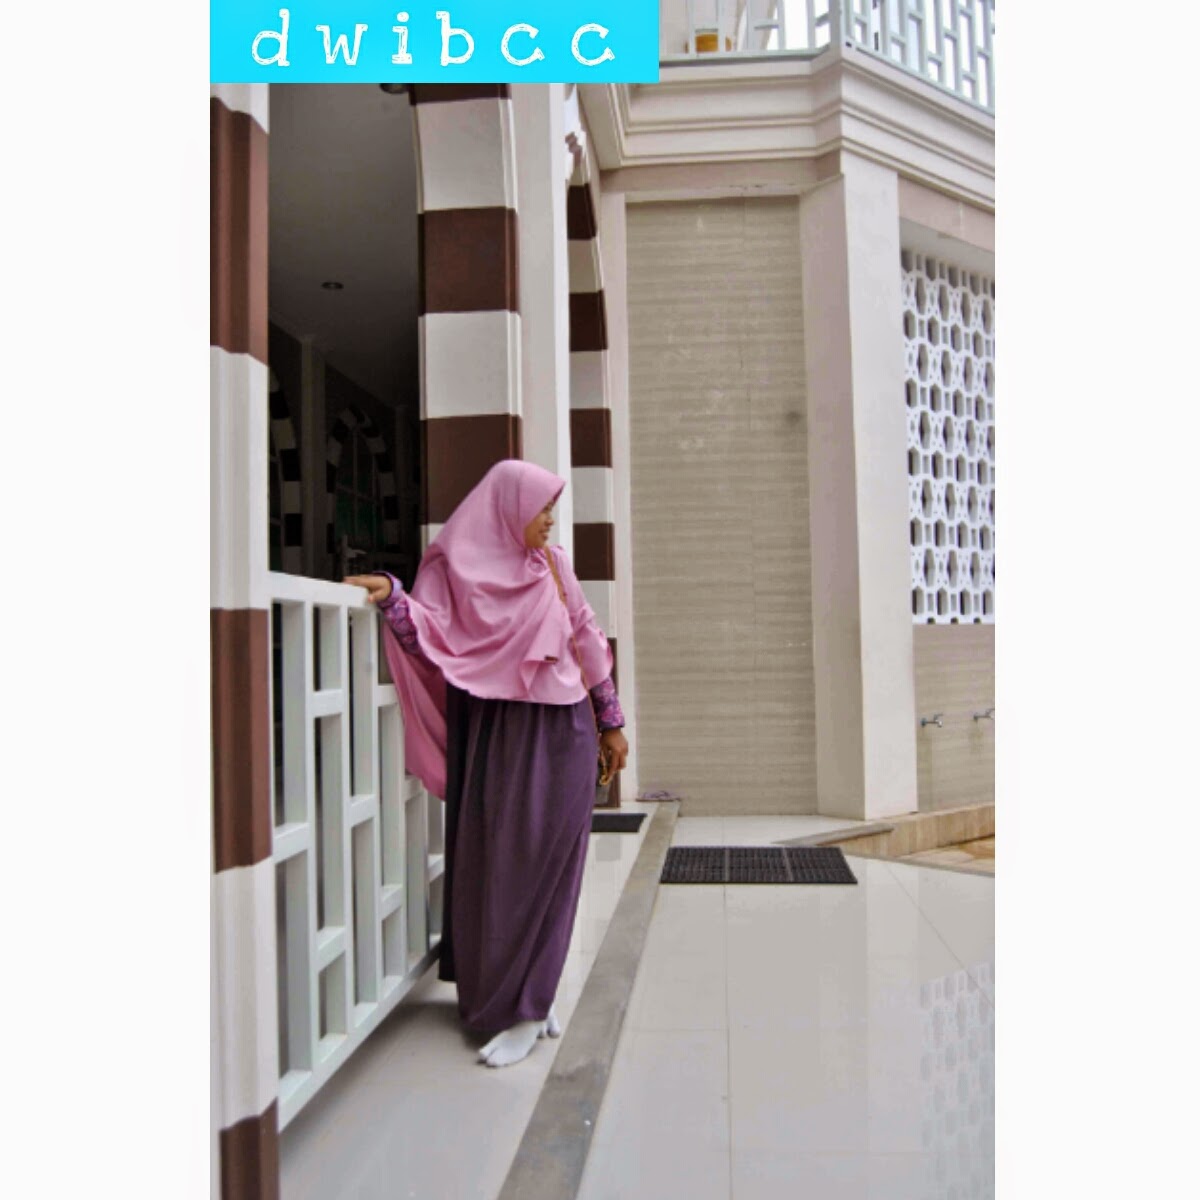 dwibcc hijab syar'i